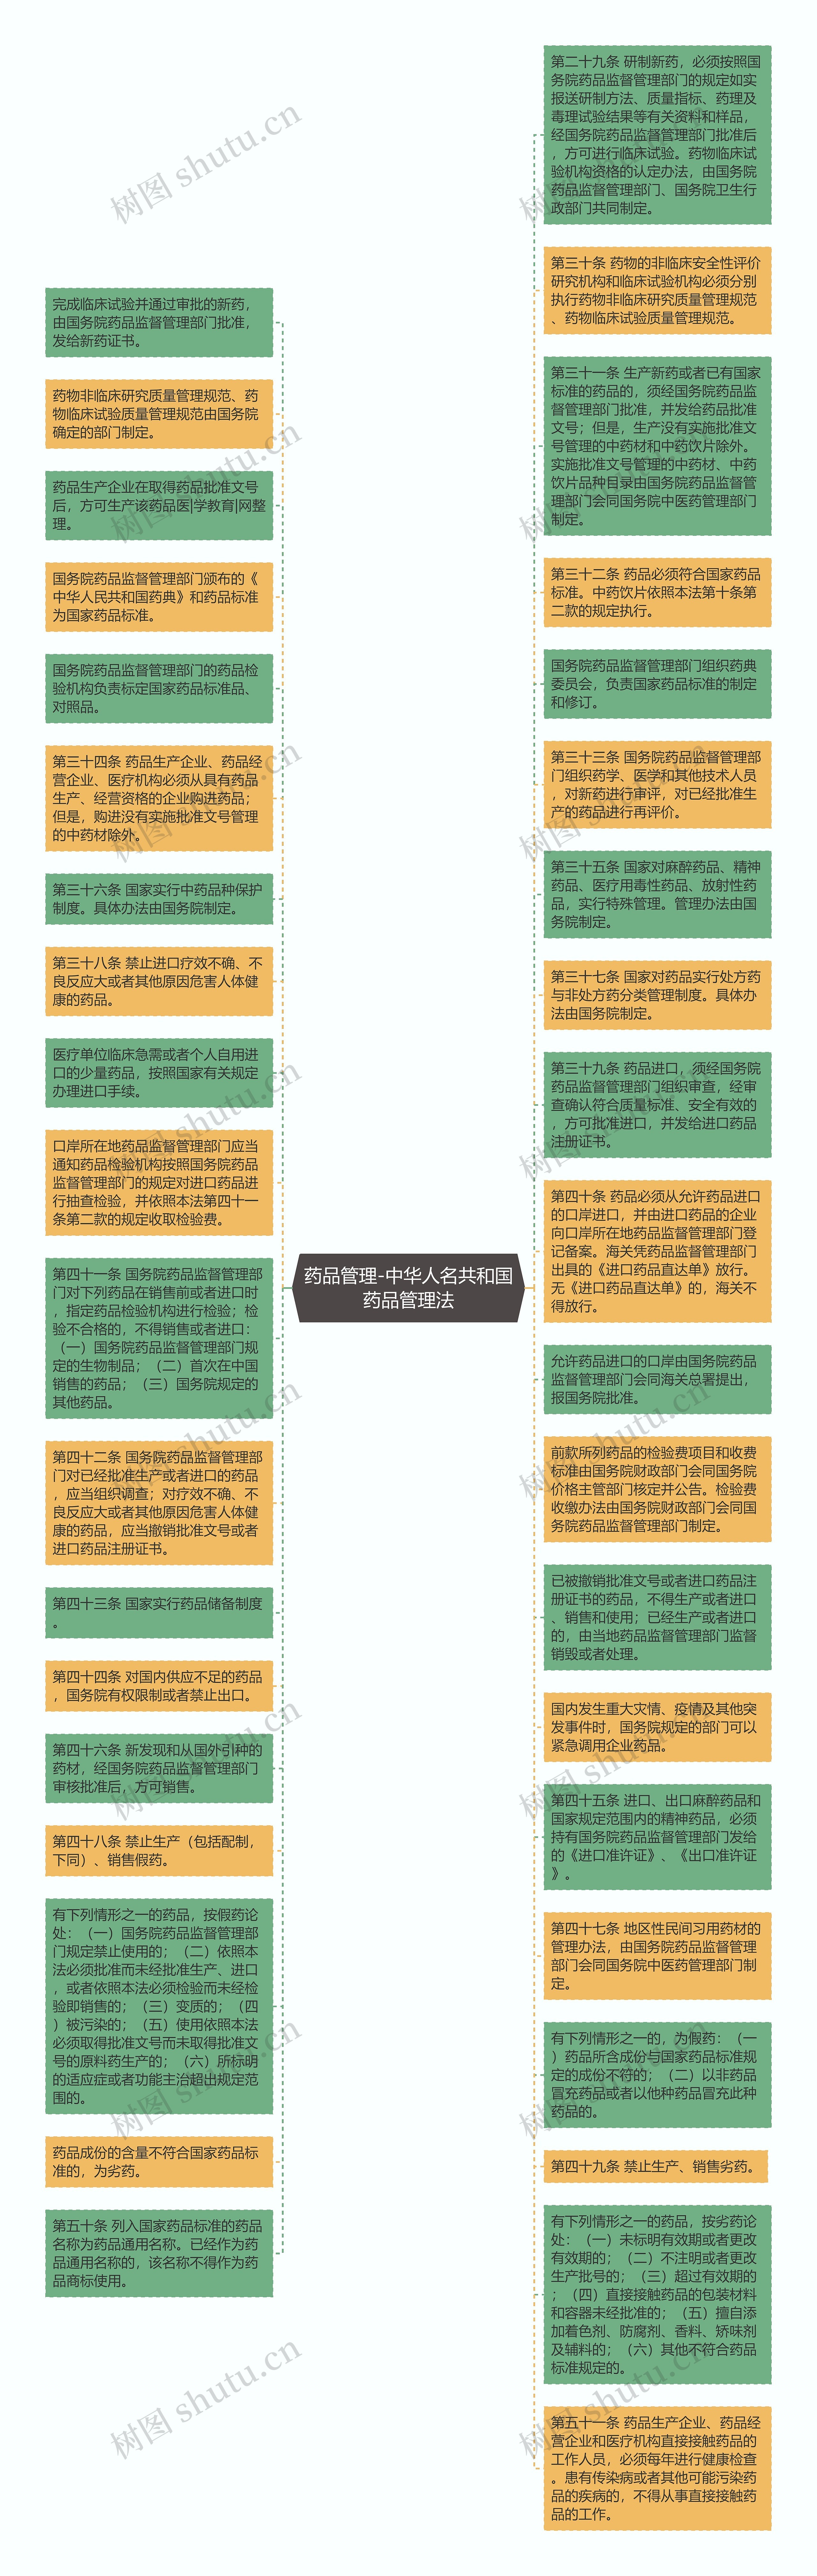 药品管理-中华人名共和国药品管理法思维导图